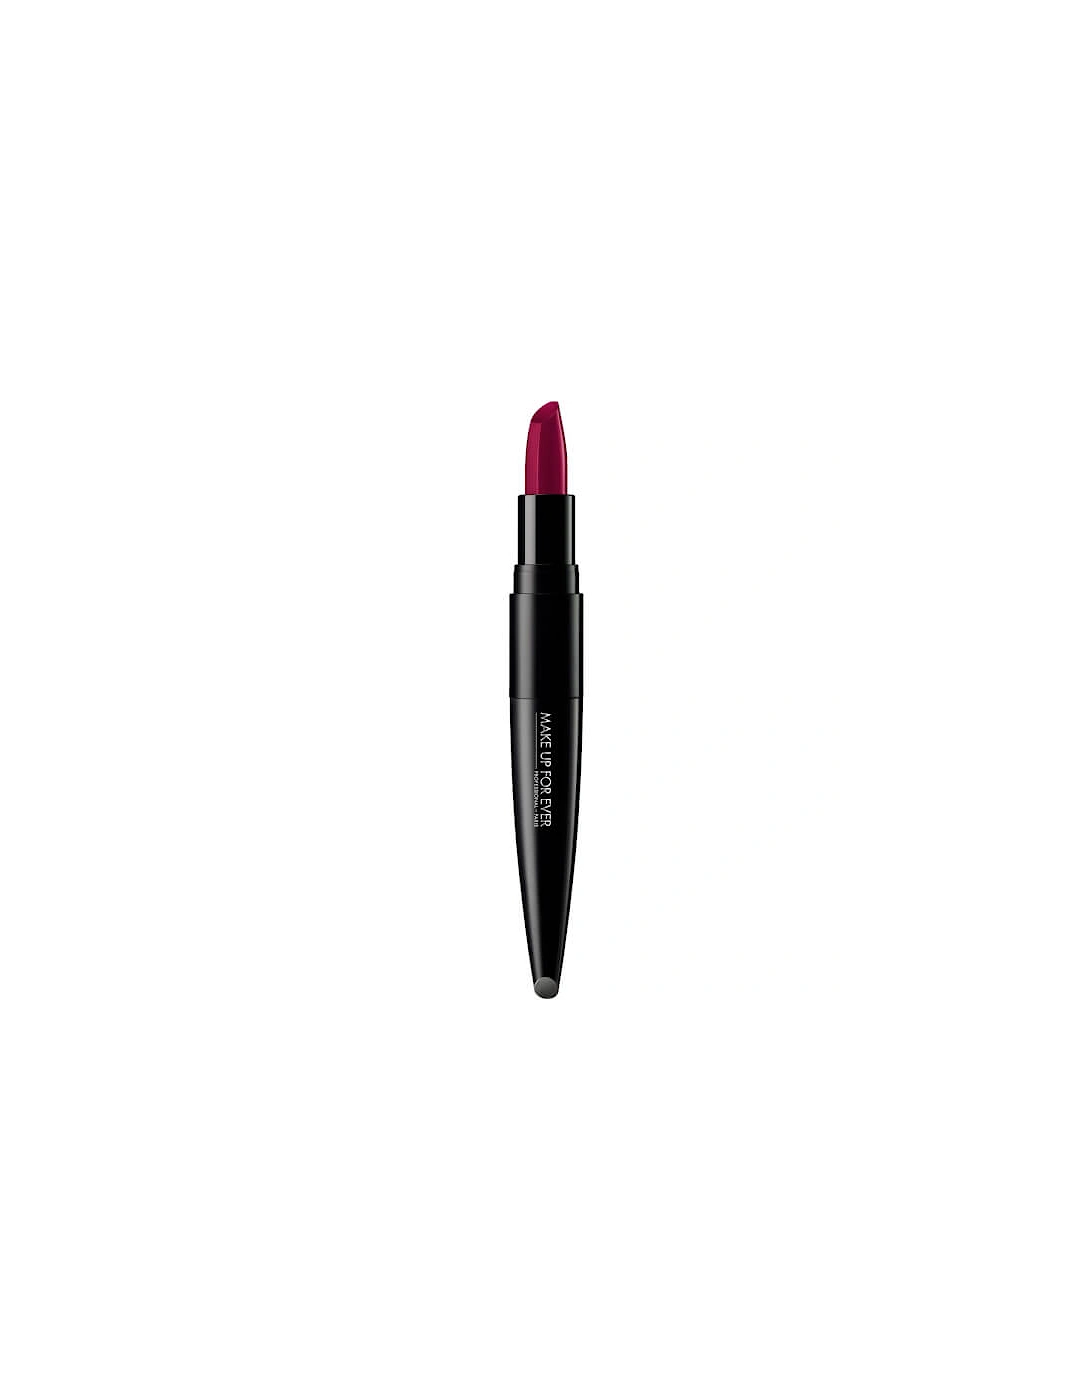 Rouge Artist Lipstick - 416-CHEERY CHILI, 2 of 1